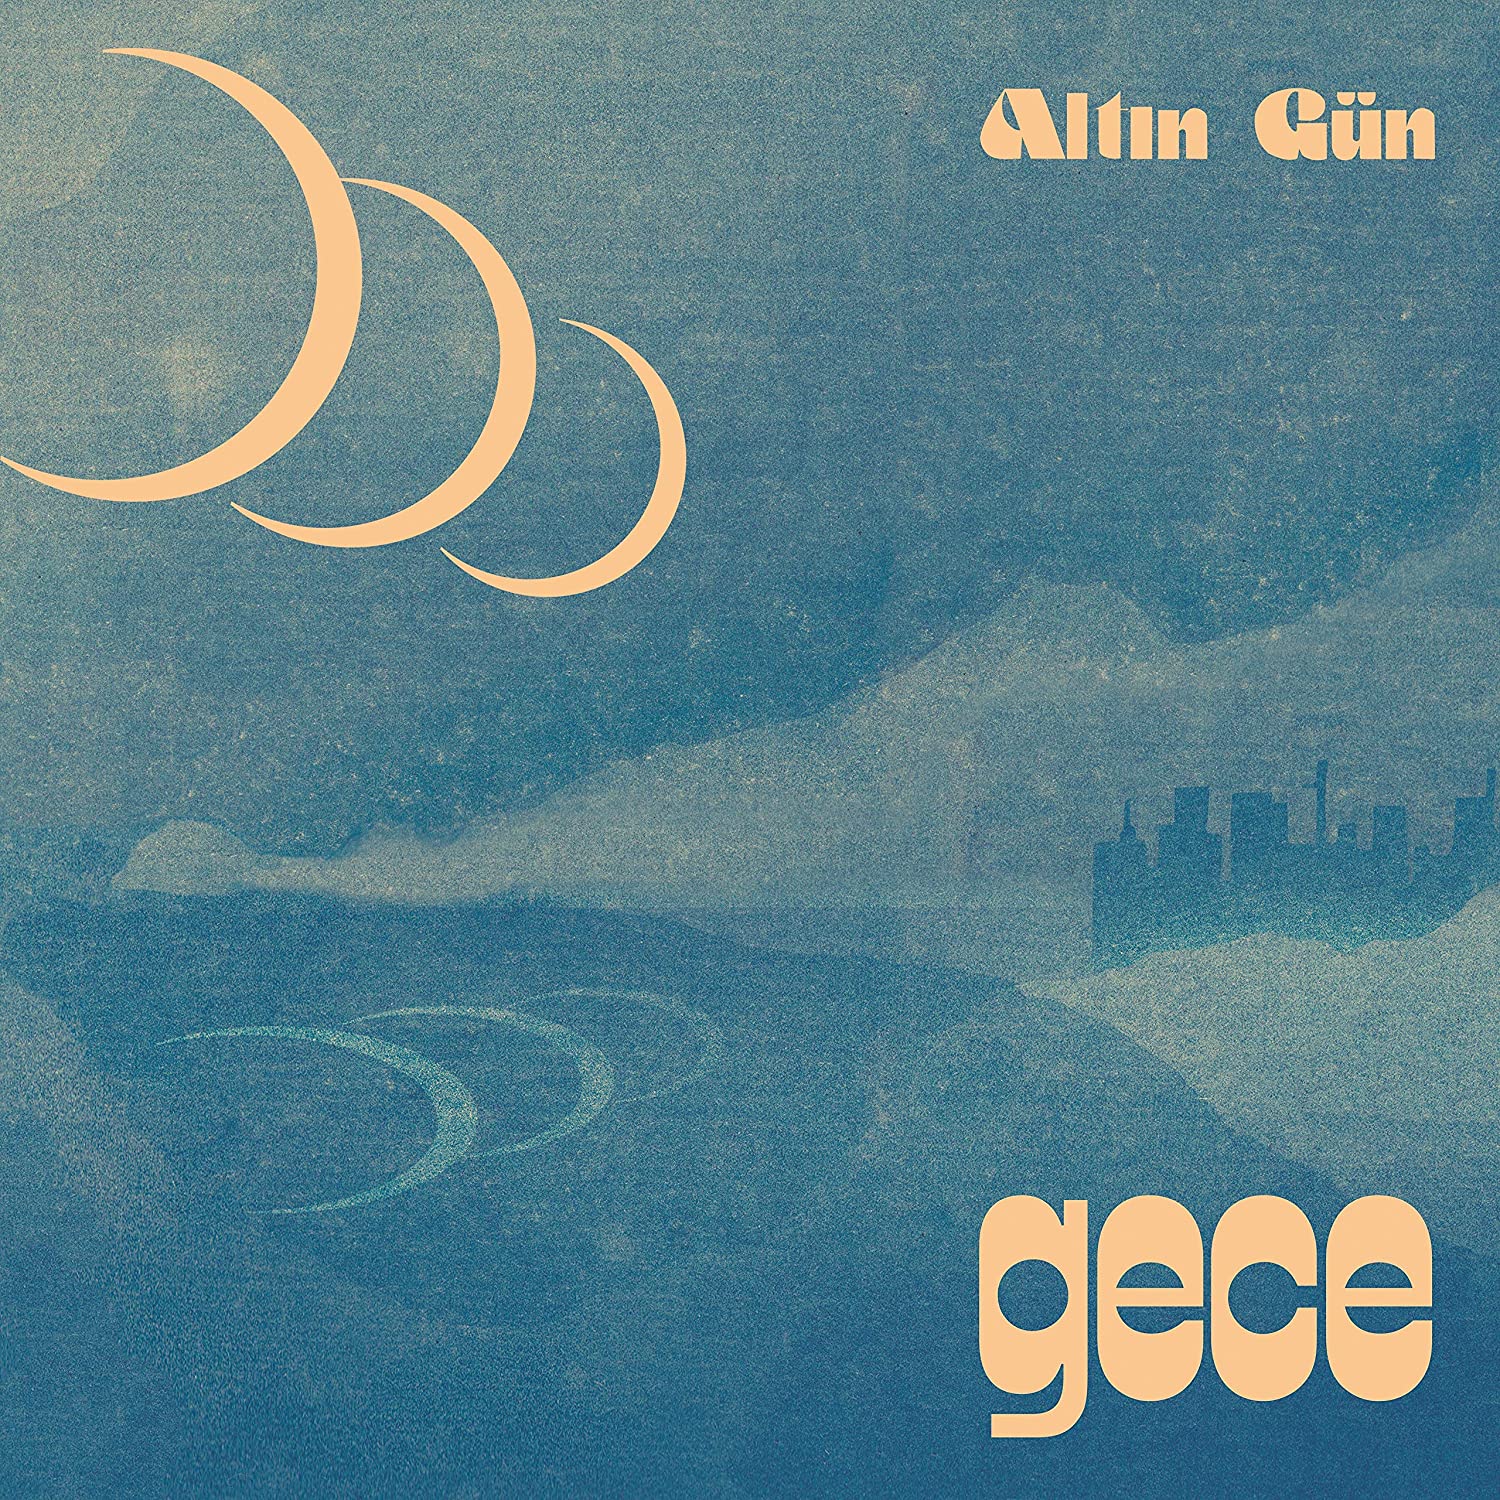 Altin Gun - Gece [Summer Sky Wave LP]